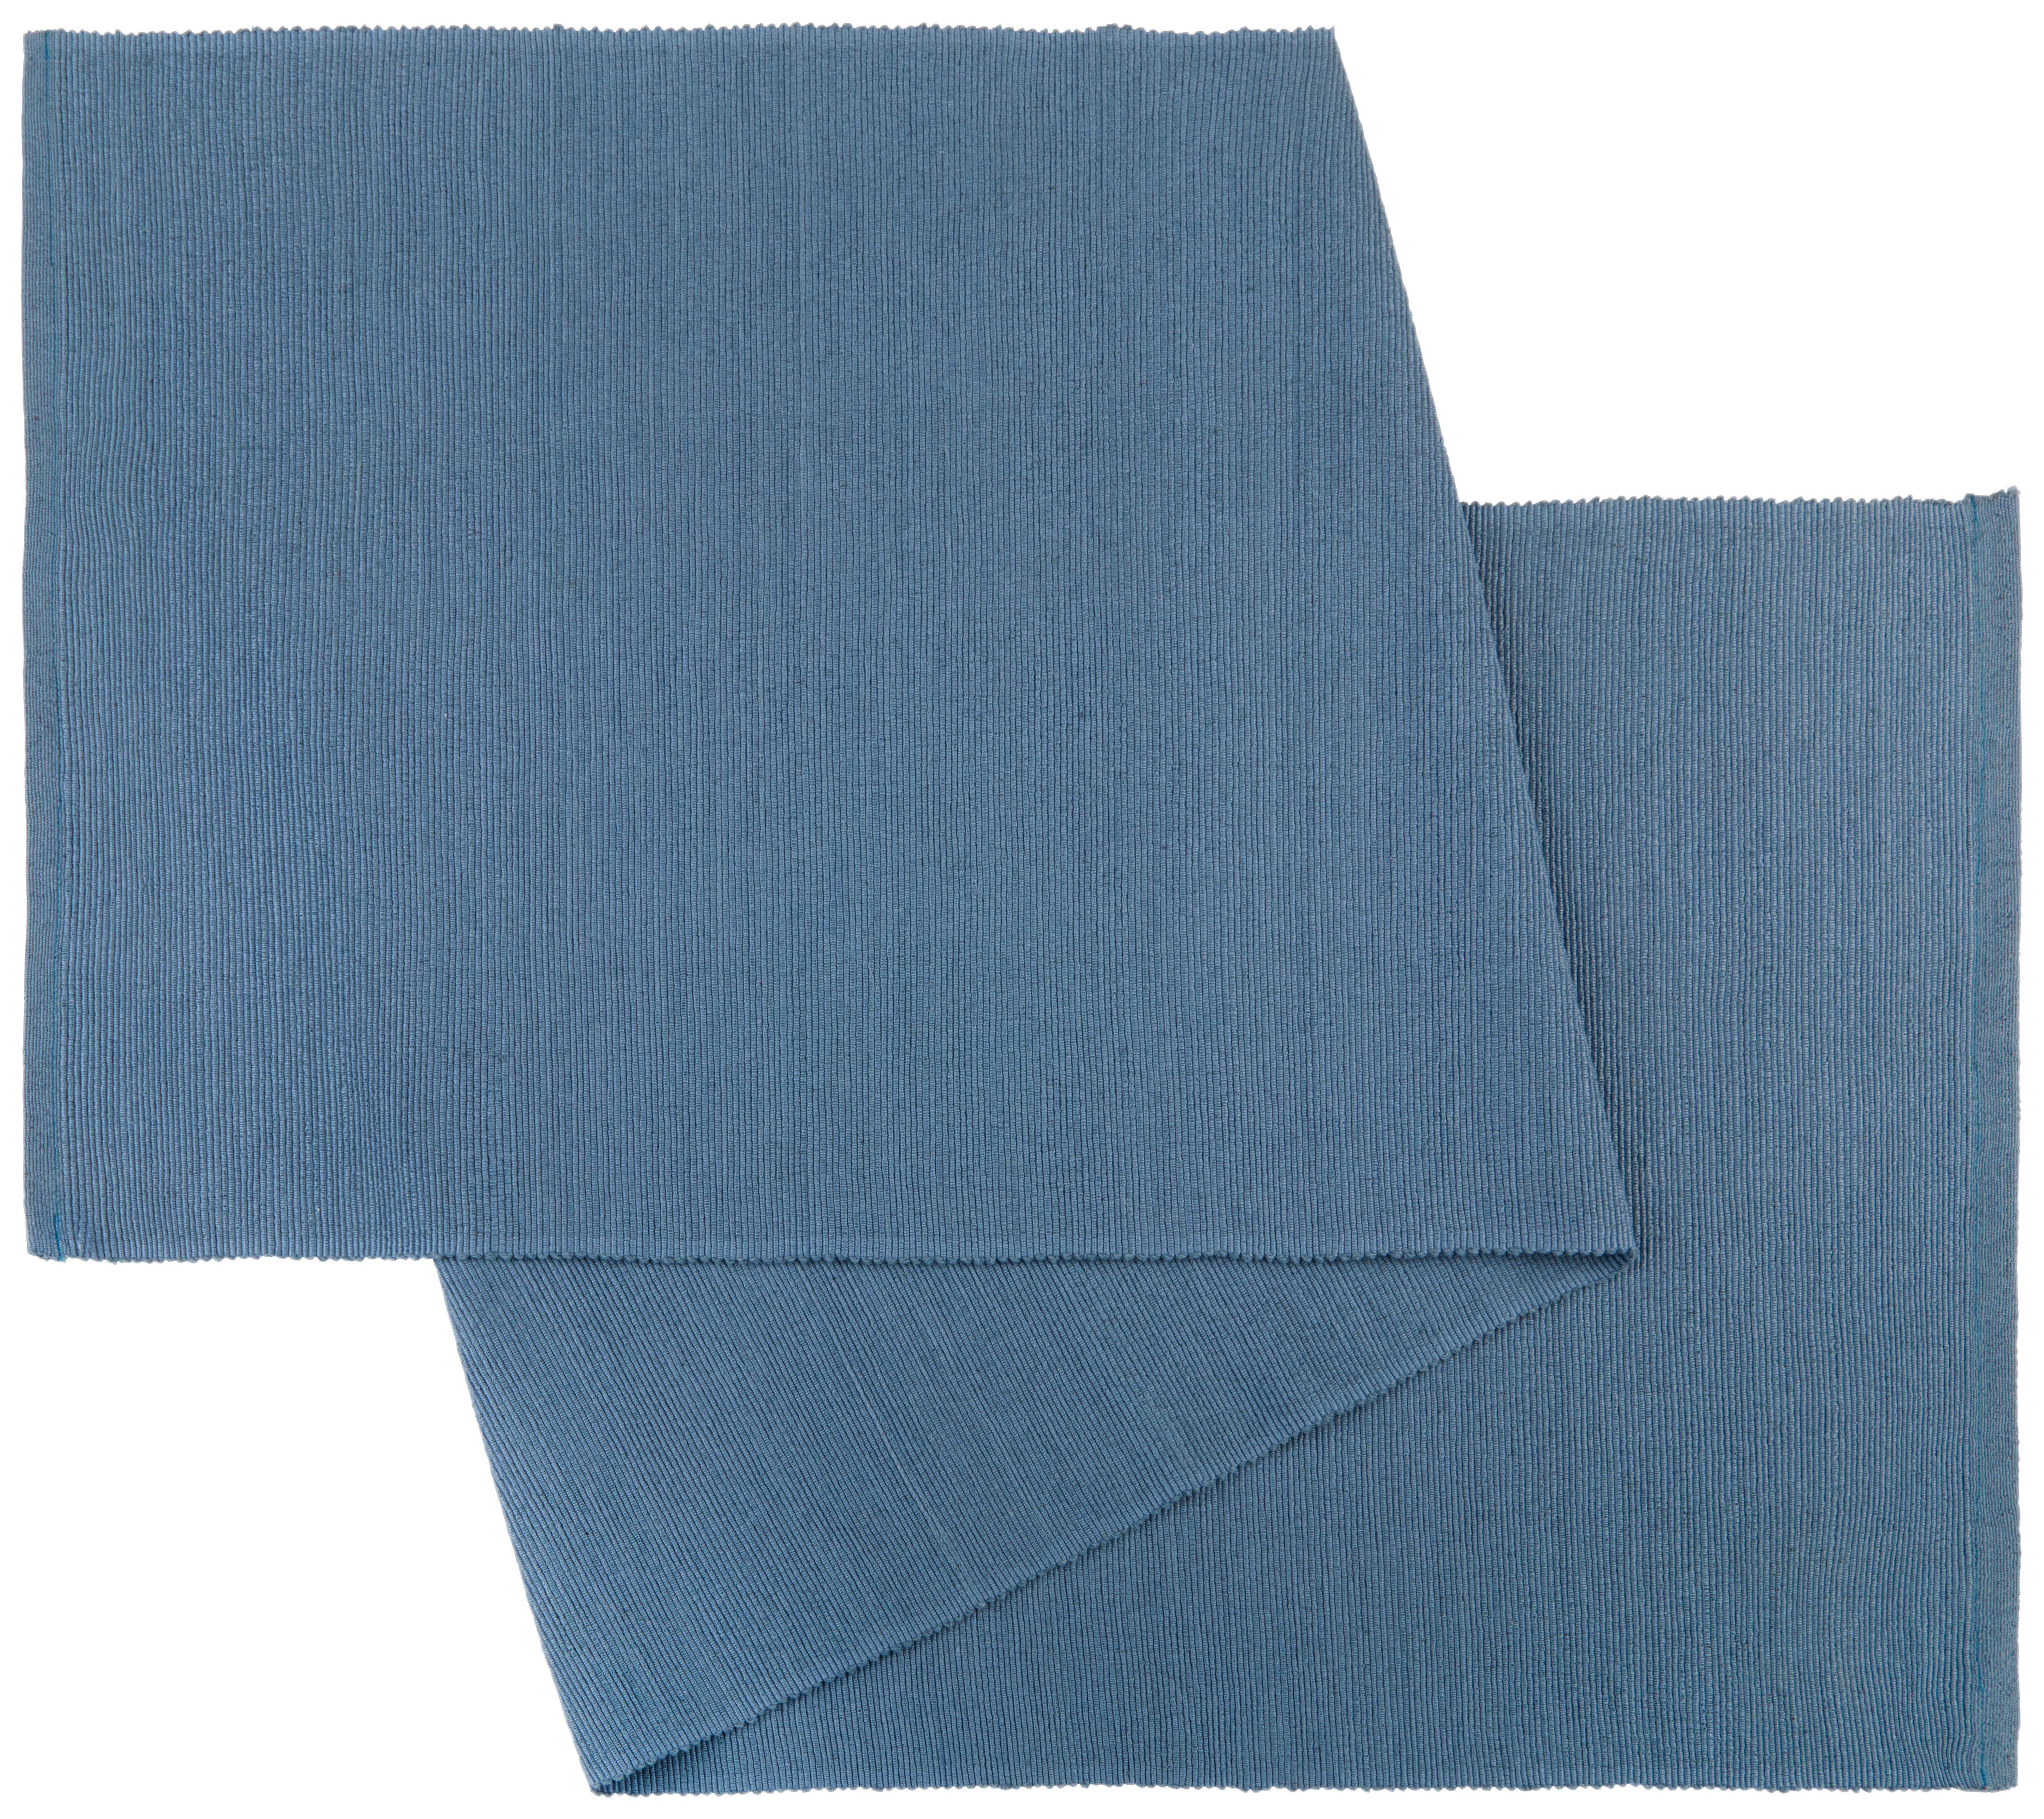 Tischläufer Maren in Stahlblau ca.40x150cm - Blau, Textil (40/150cm) - Modern Living